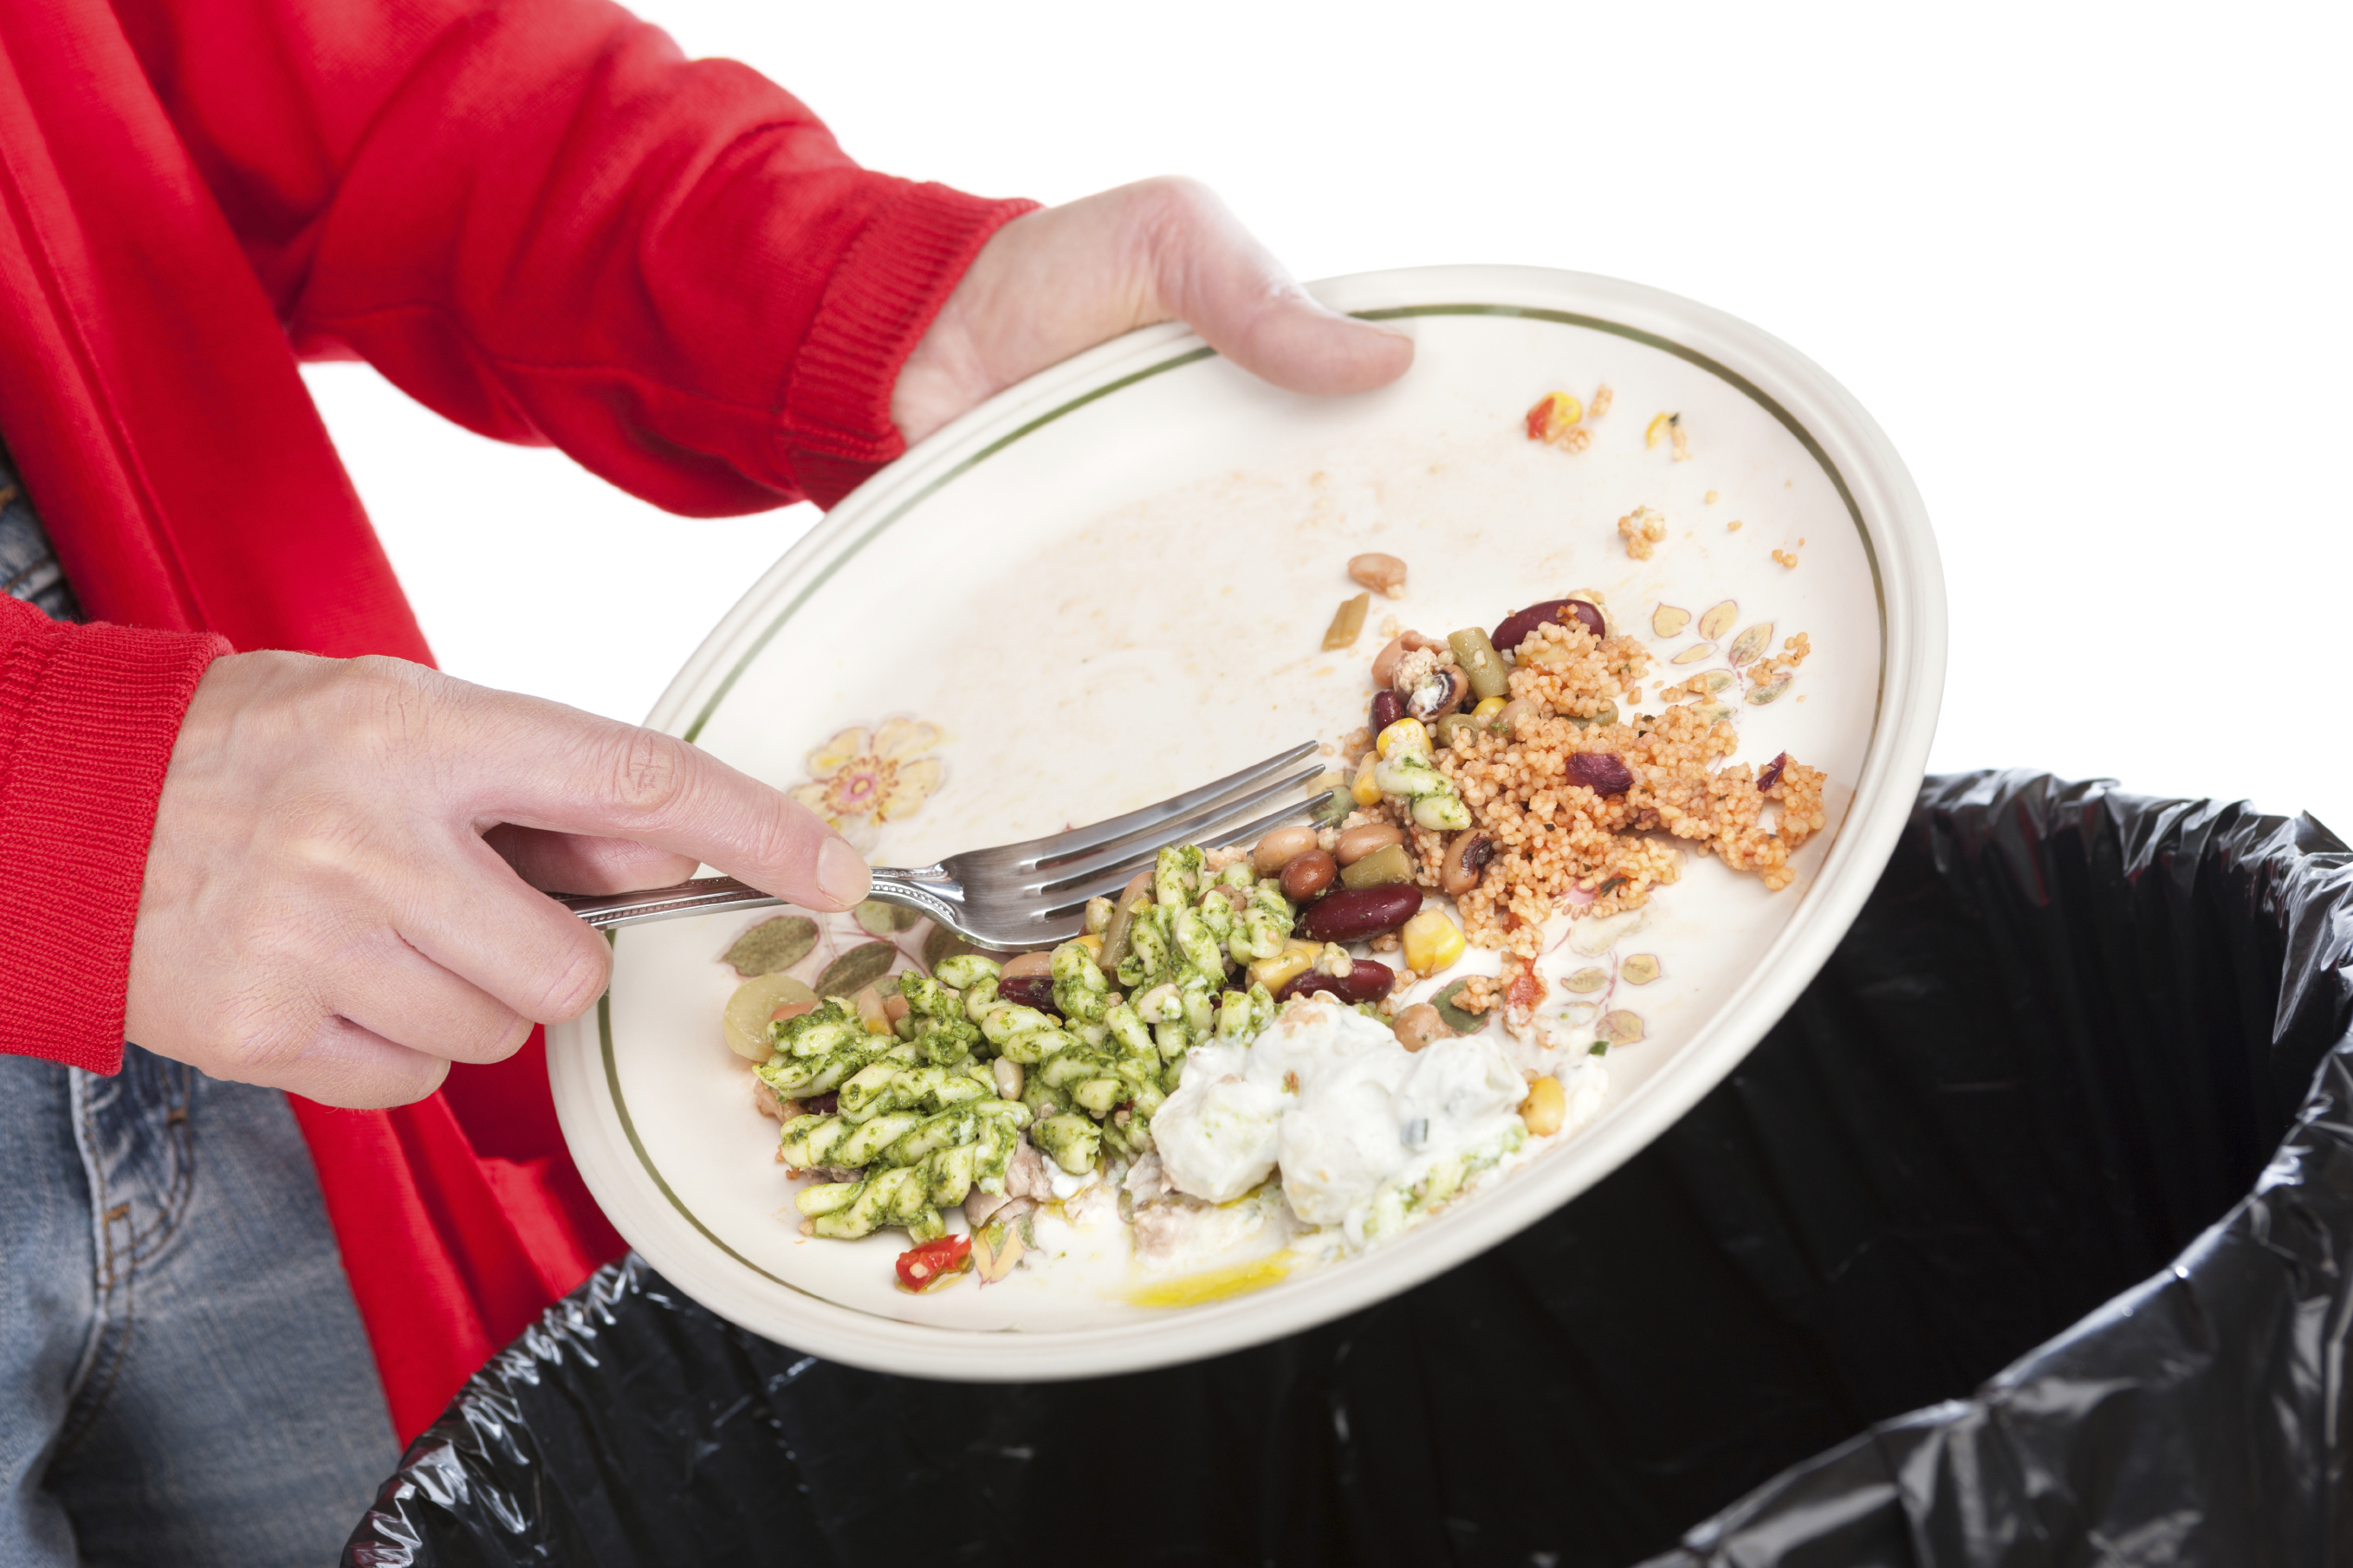 تقرير لمنظمة الفاو يدعو إلى الحدّ من فقد وهدر الأطعمة الغنية بالعناصر الغذائية